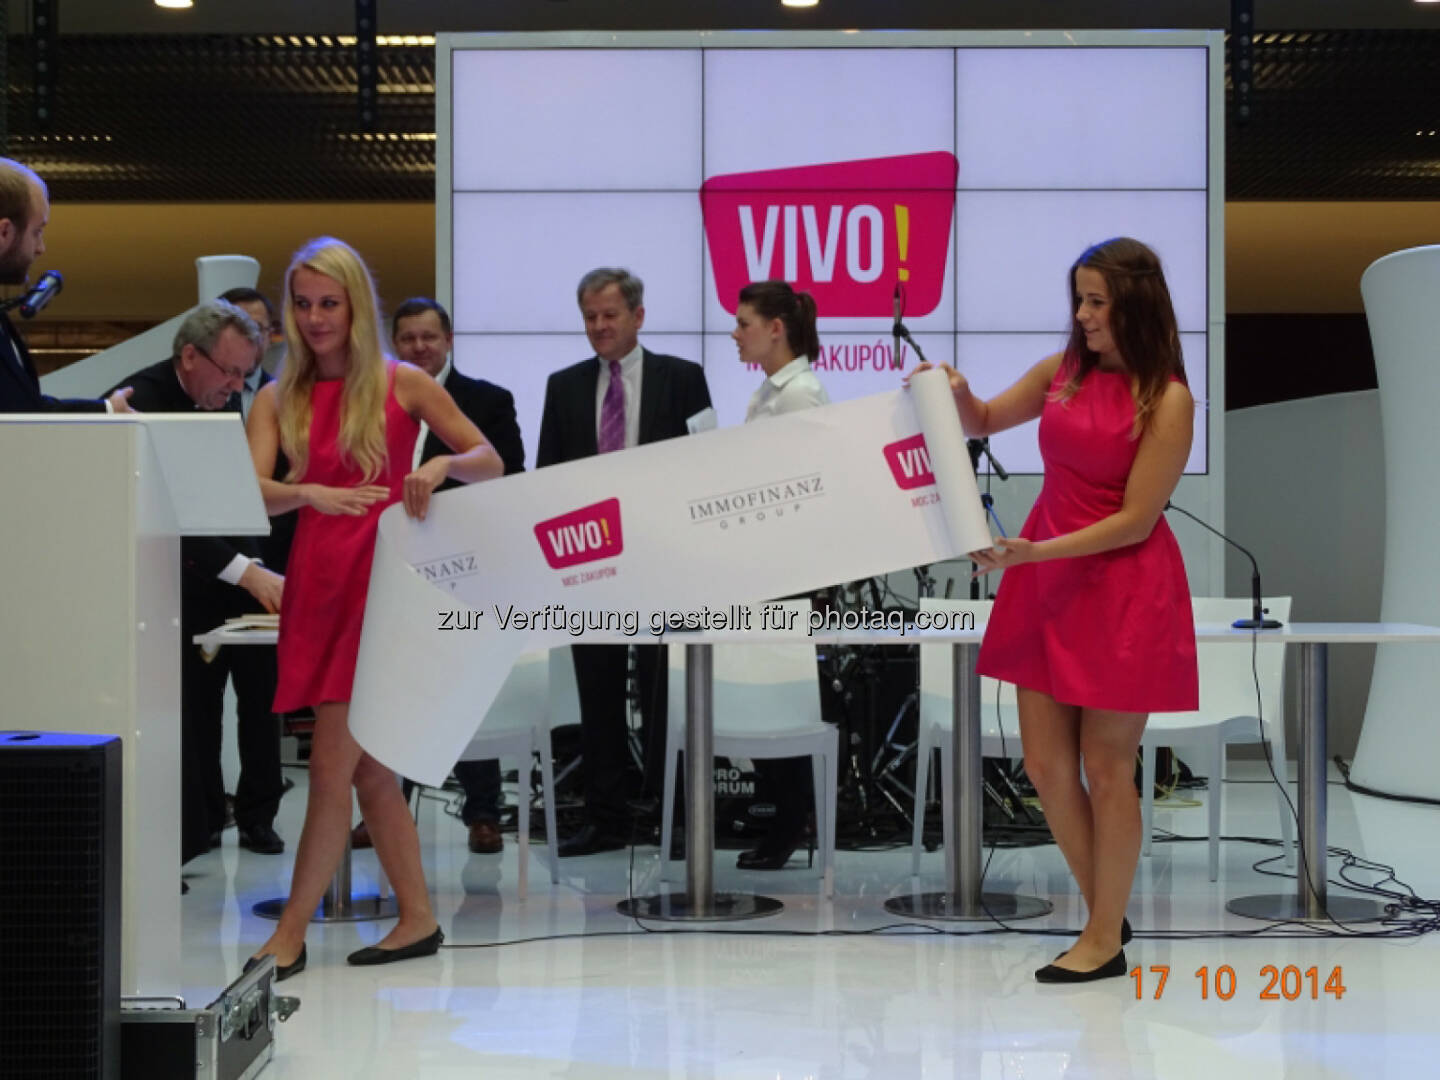 Eröffnung Vivo! Shopping Center, http://blog.immofinanz.com/de/2014/10/20/immofinanz-mehr-als-70.000-besucher-am-eroeffnungs-wochenende-in-pila/